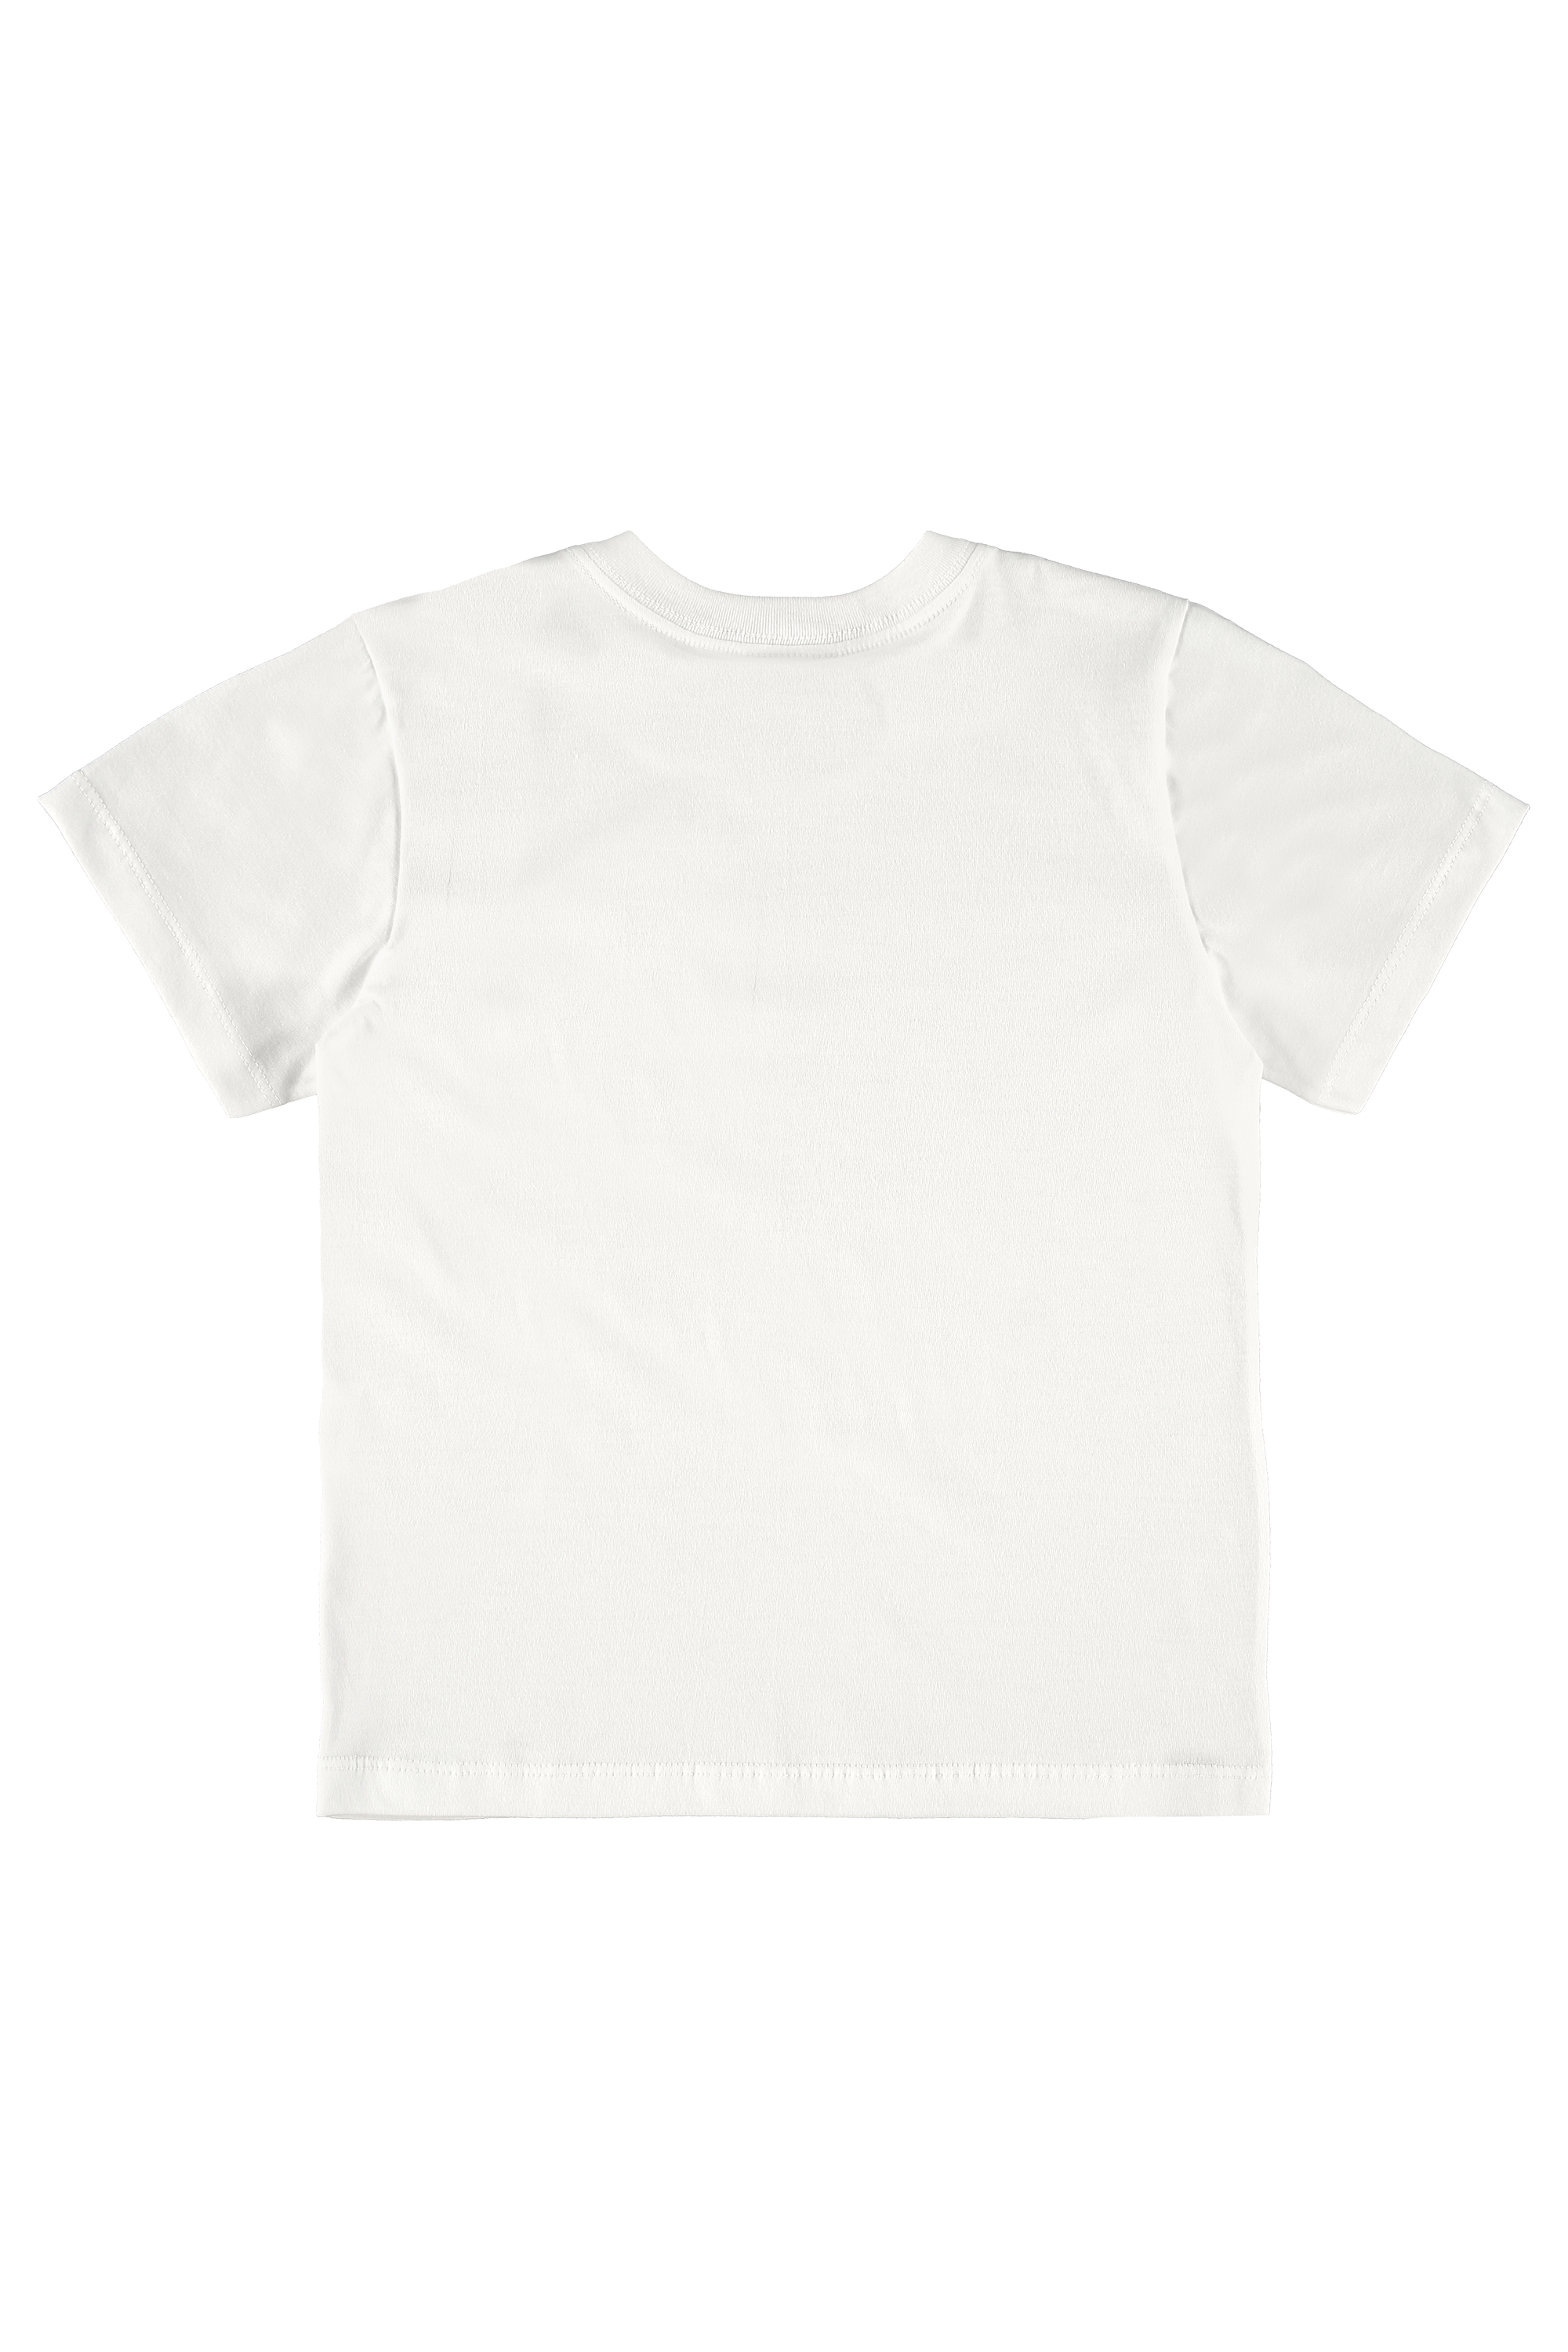 T-shirt chłopięcy, biały, Quimby